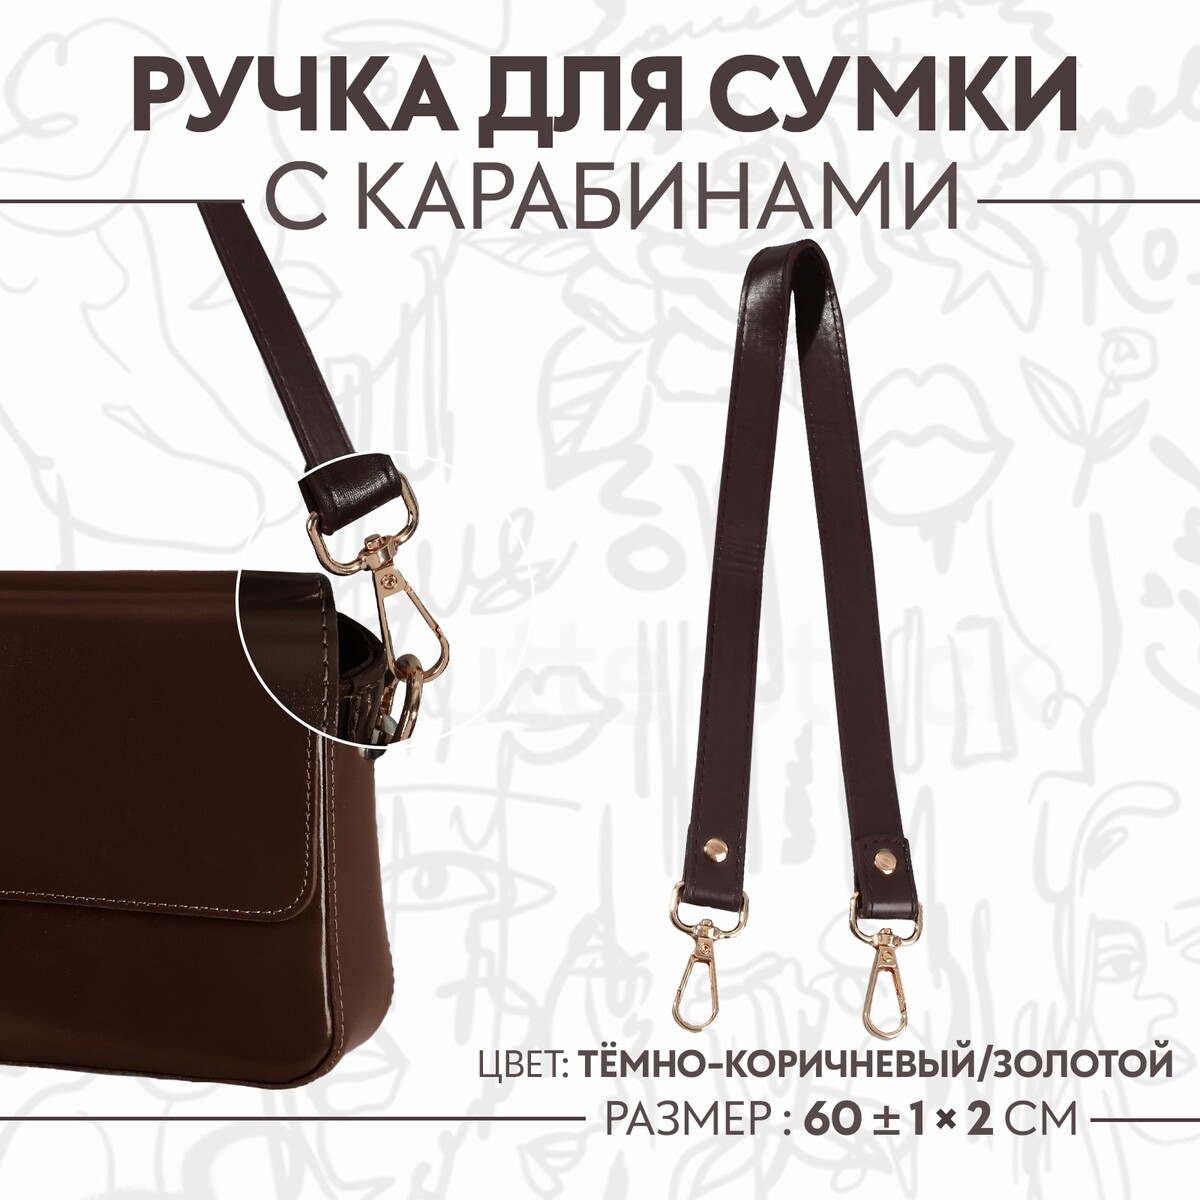 Ручка для сумки, с карабинами, 60 ± 1 см × 2 см, цвет темно-коричневый